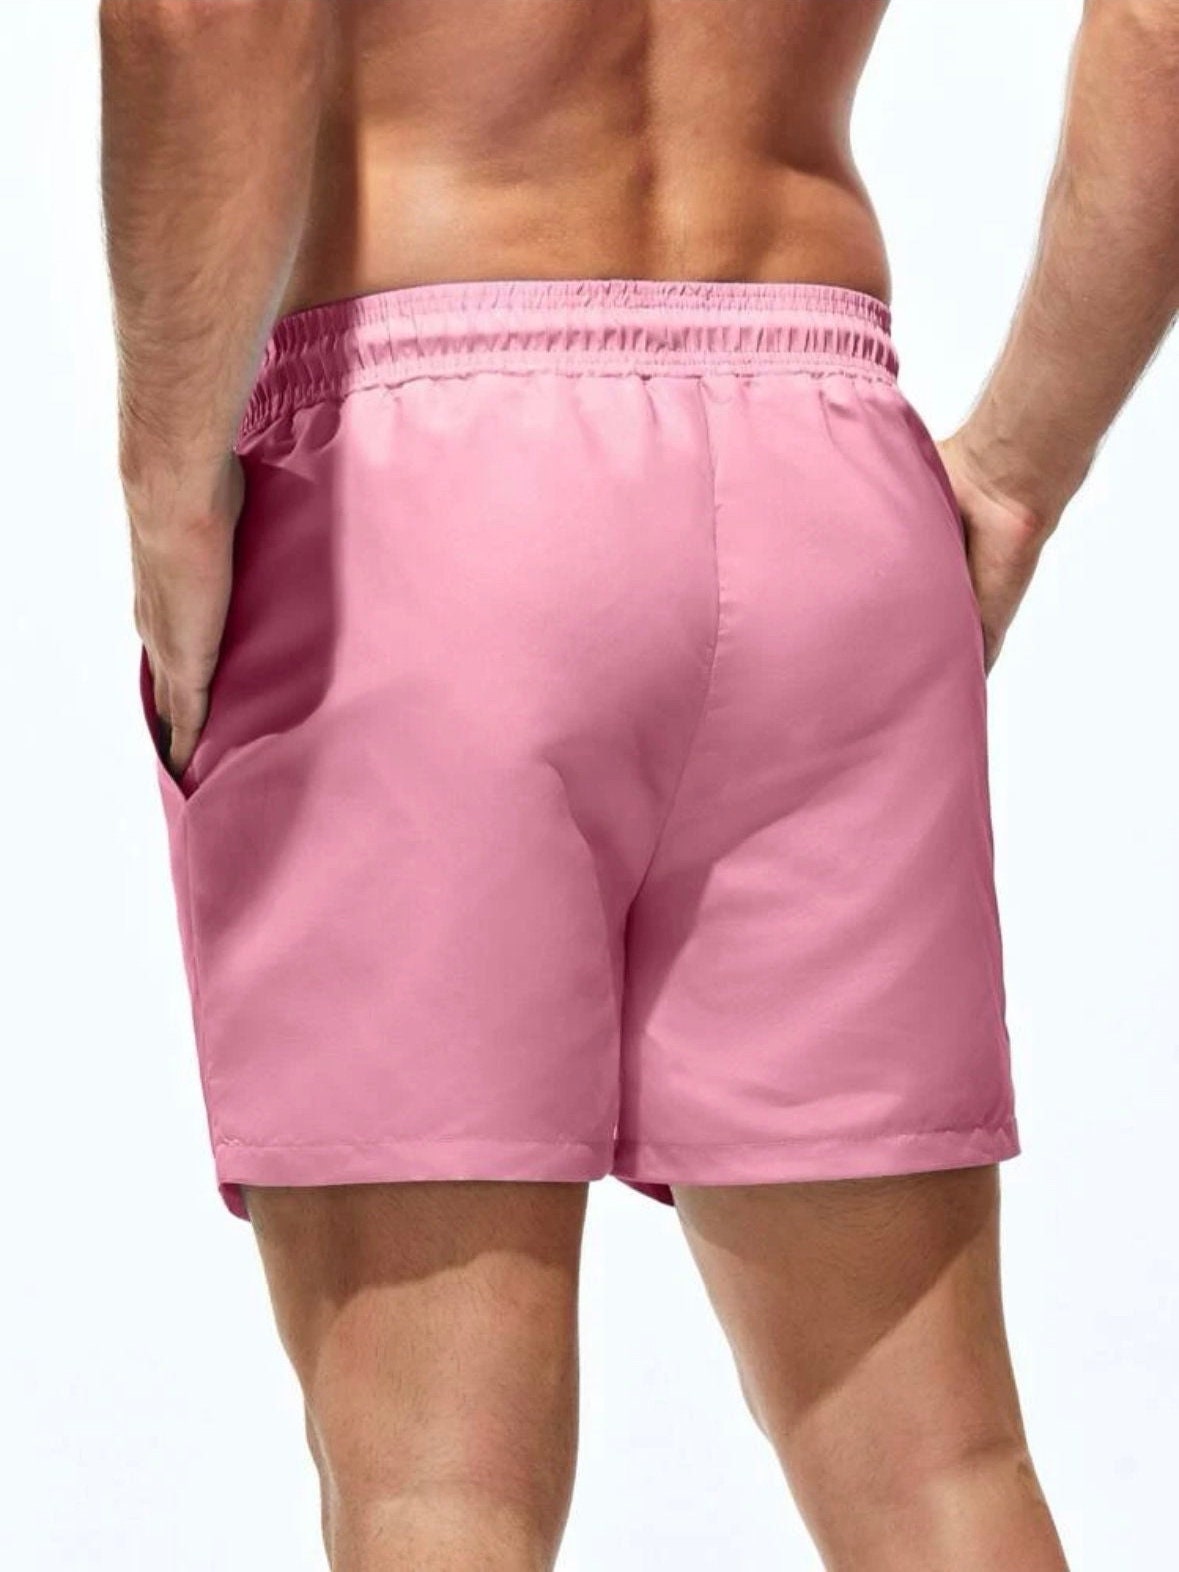 The Lexis Men’s Pink Solid Print Drawstring Waist Swim Trunks men’s swimsuit